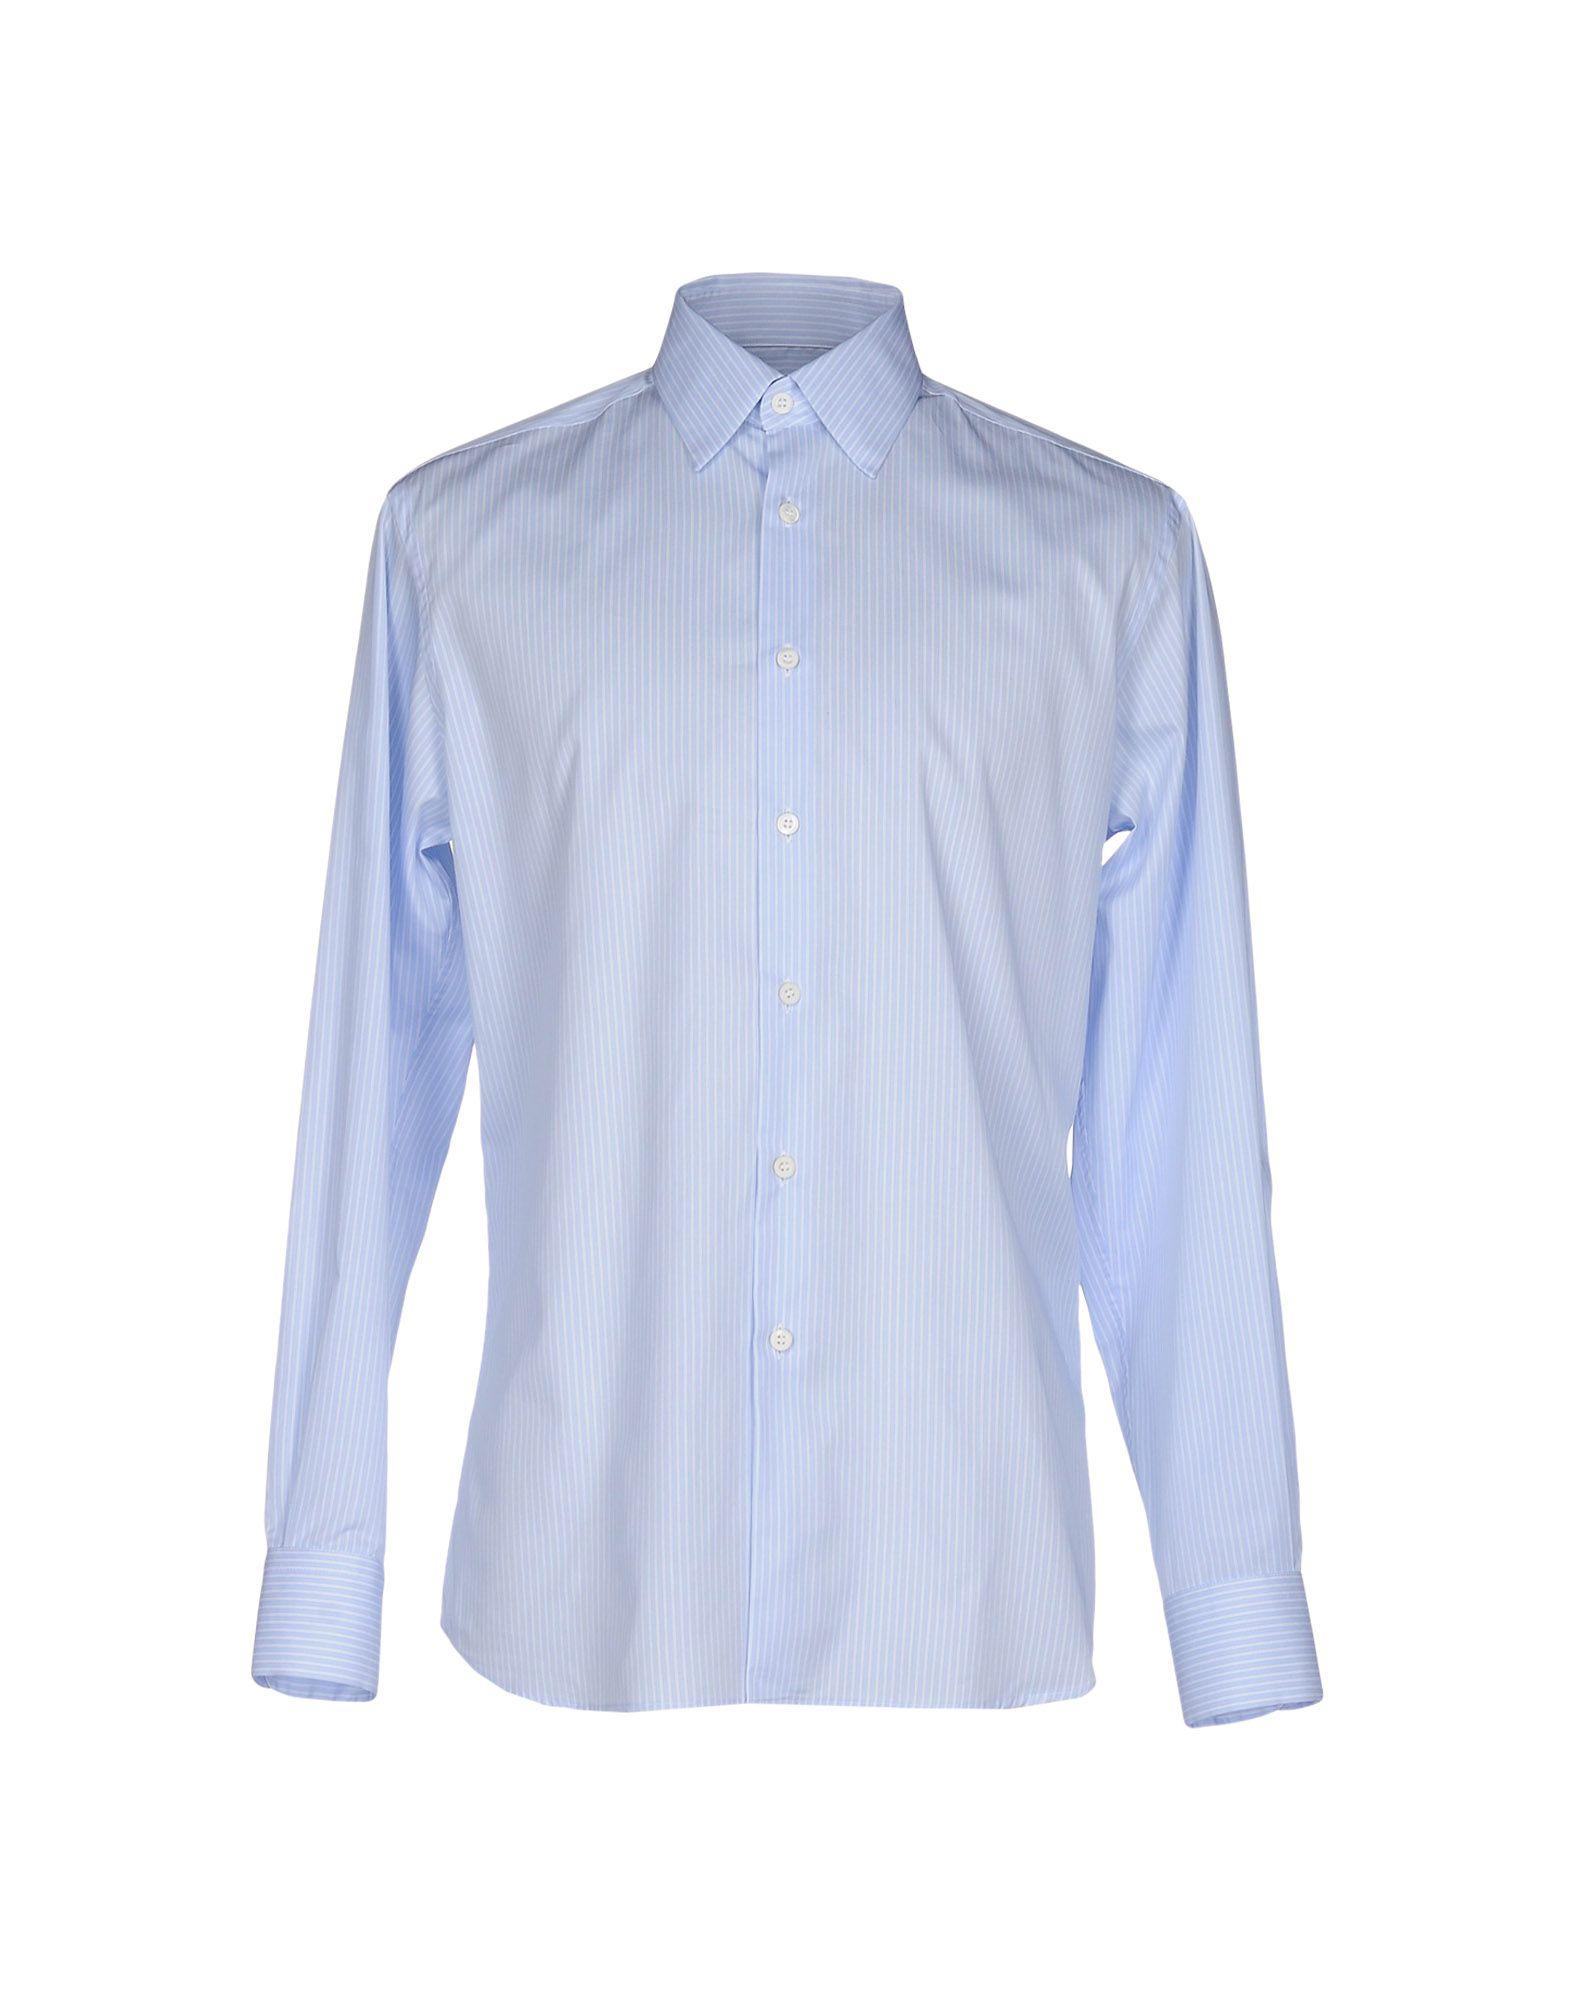 Lyst - Prada Shirt in Blue for Men